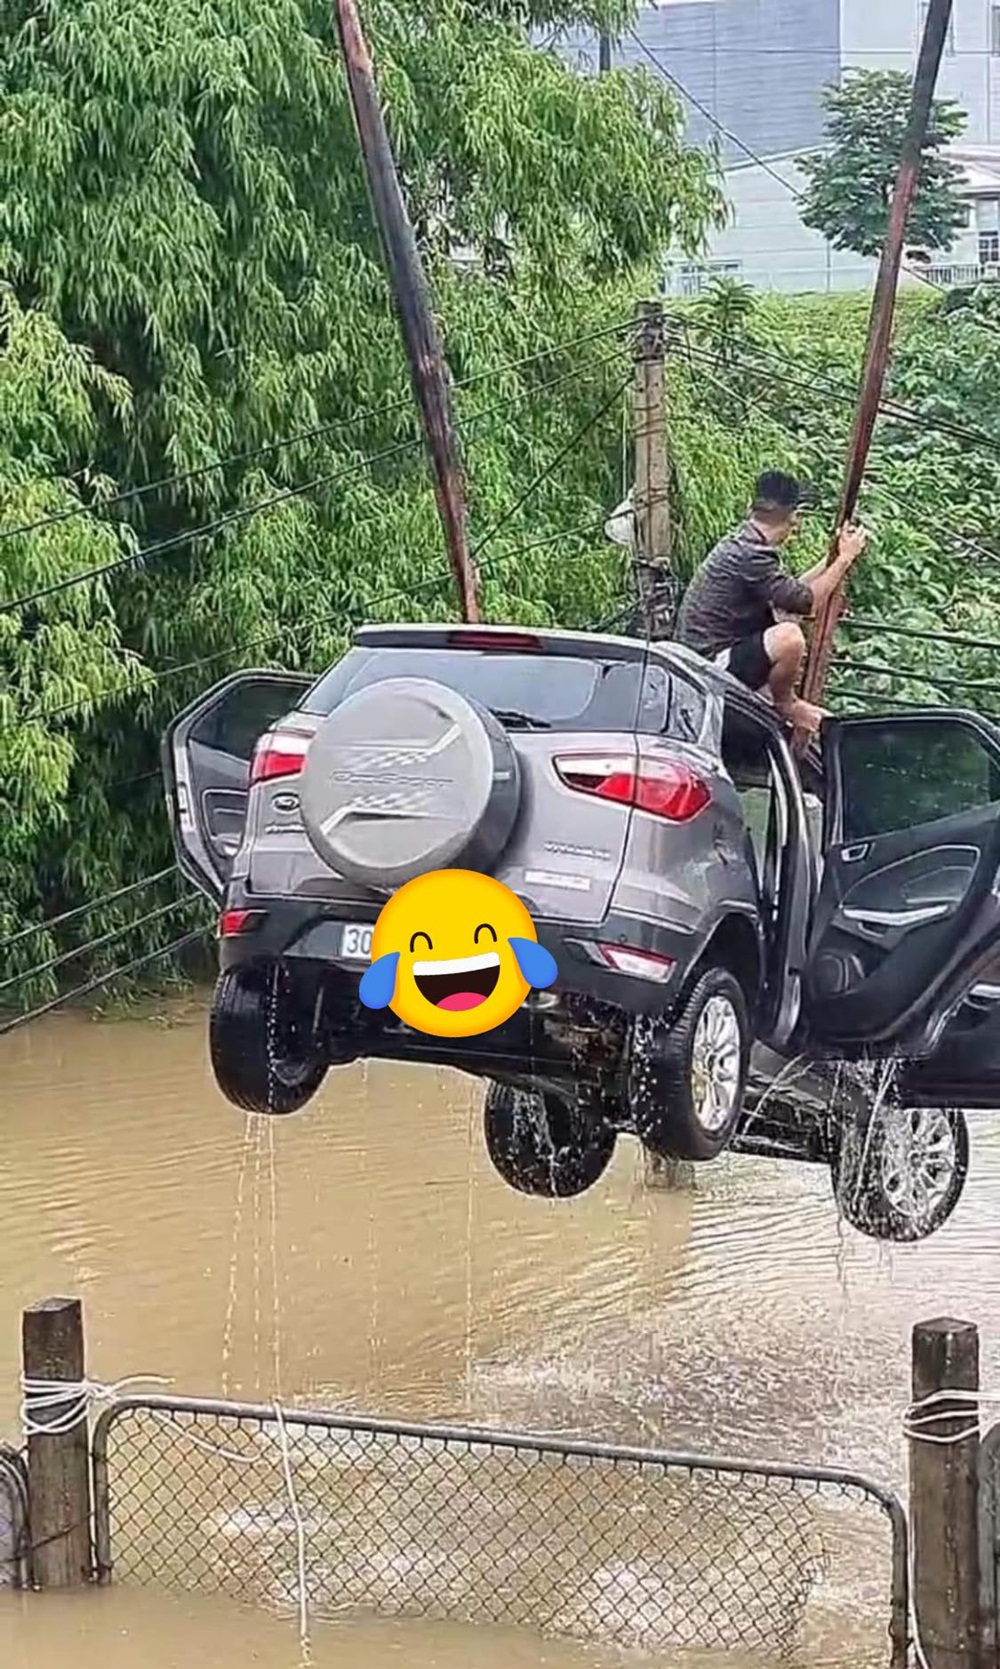 Khi xe bị chết máy do ngập nước, tuyệt đối không cố nổ máy. Nếu không công ty bảo hiểm sẽ từ chối bồi thường.